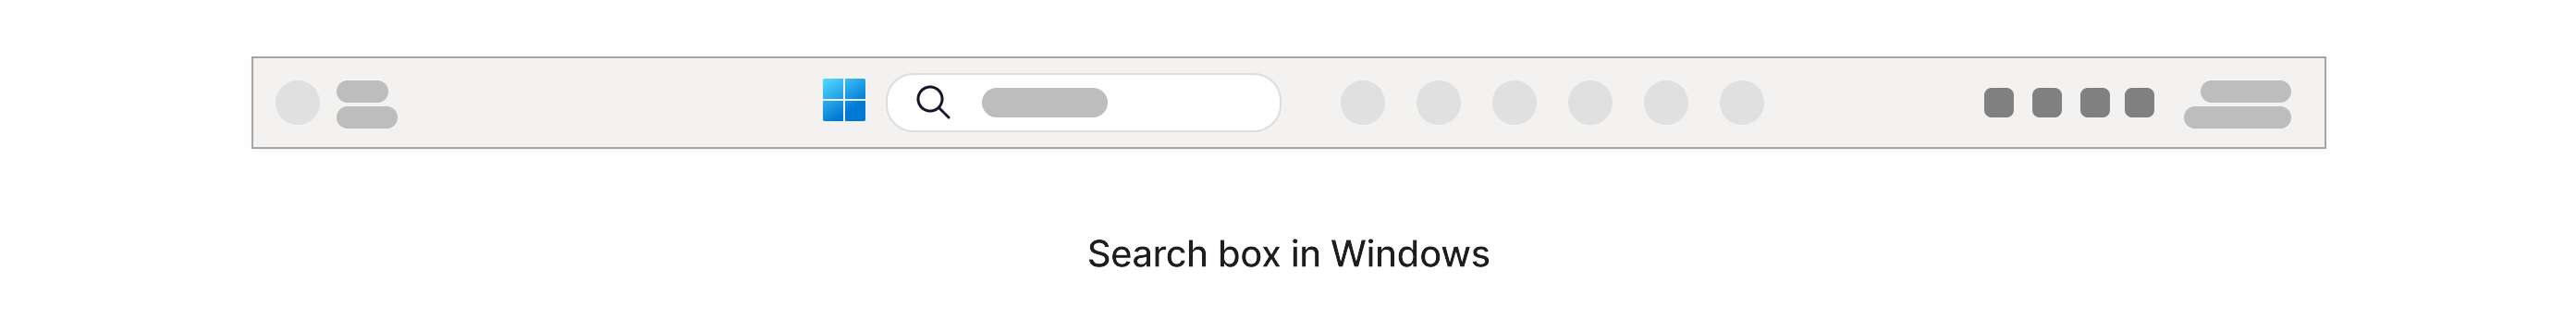 Søkeboks med et ikon for forstørrelsesikon på oppgavelinjen i Windows nederst på skjermen.